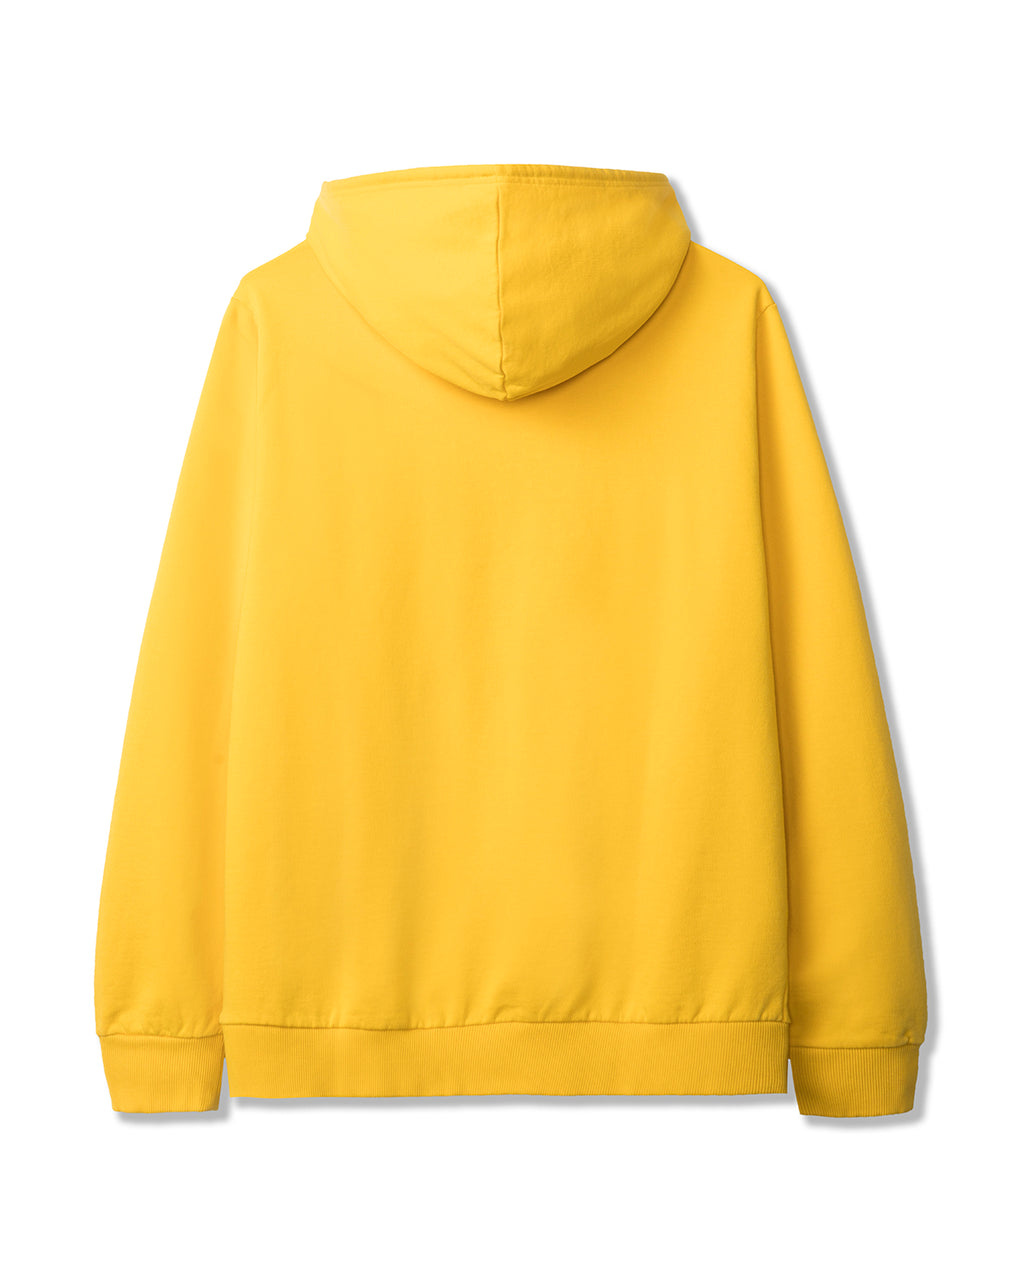 Men's Spacy Long Sleeve Hooded Sweatshirt A.P.C. x Brain Dead - Yellow 2